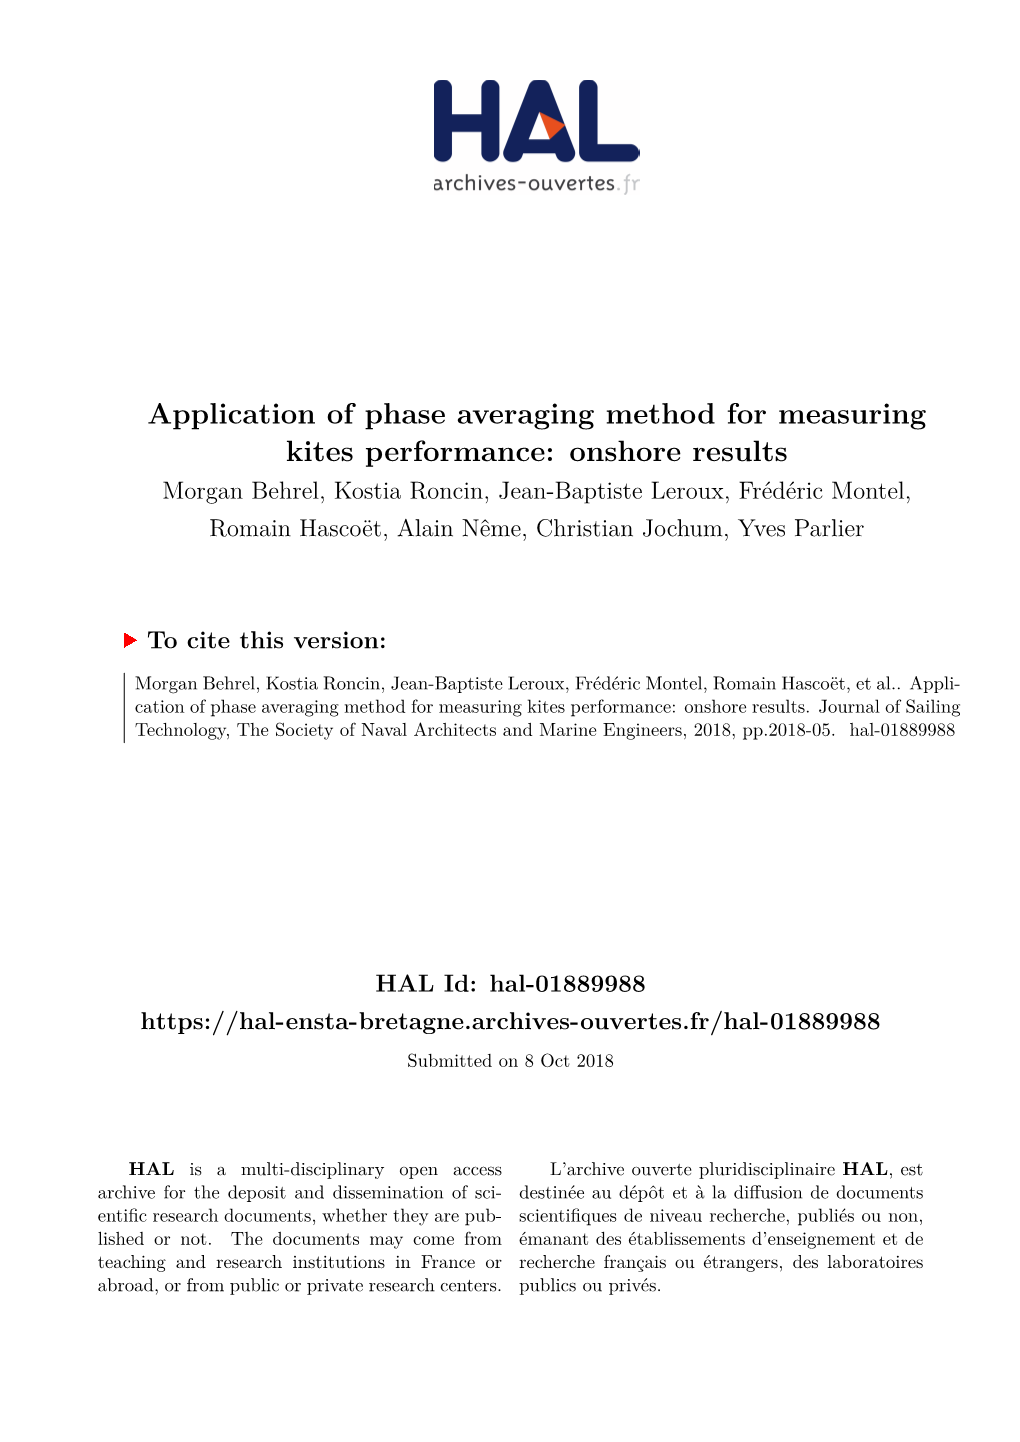 Application of Phase Averaging Method for Measuring Kites